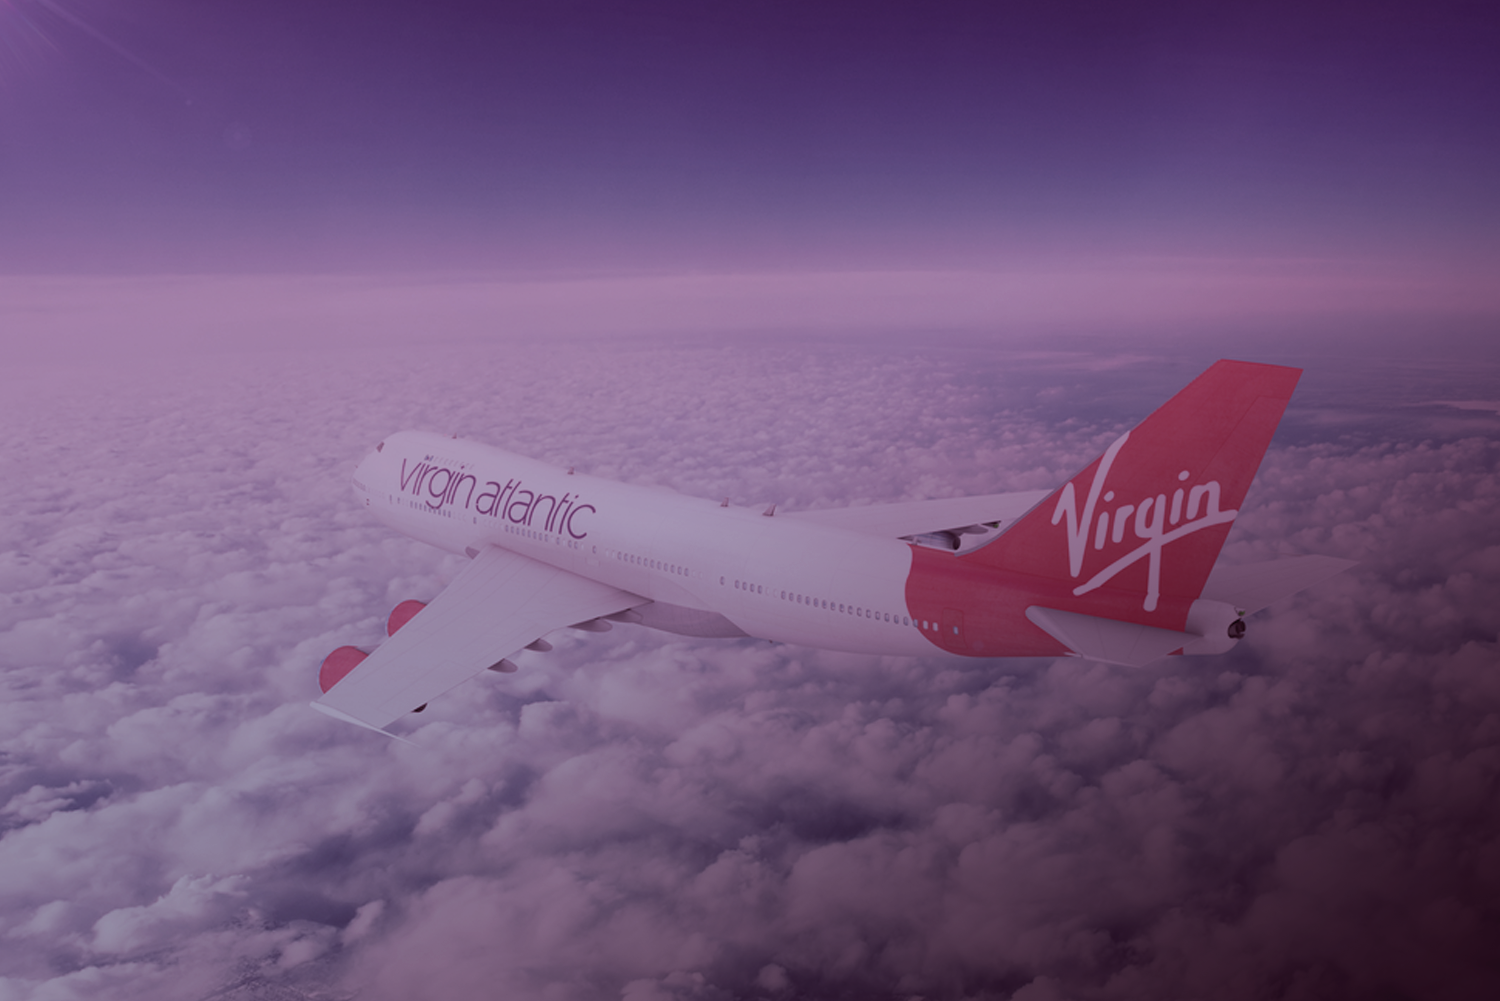 A Virgin Atlantic começará a operar voos no Brasil em 2020